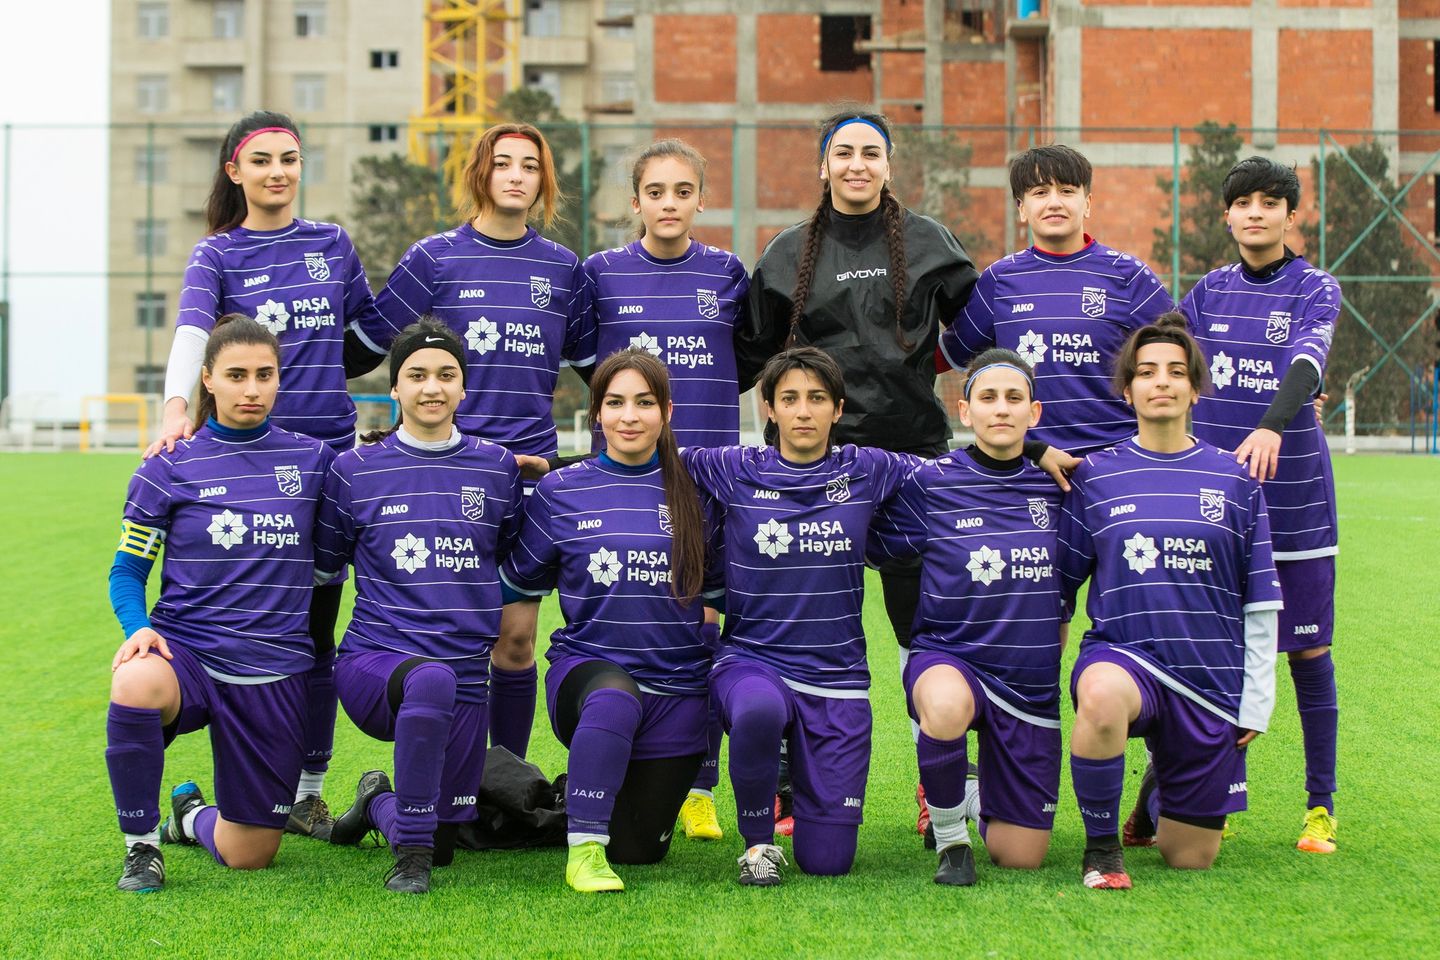 Sumqayıtın qızlar futbol klubu rəqibini 18:0 hesabı ilə udub - FOTO